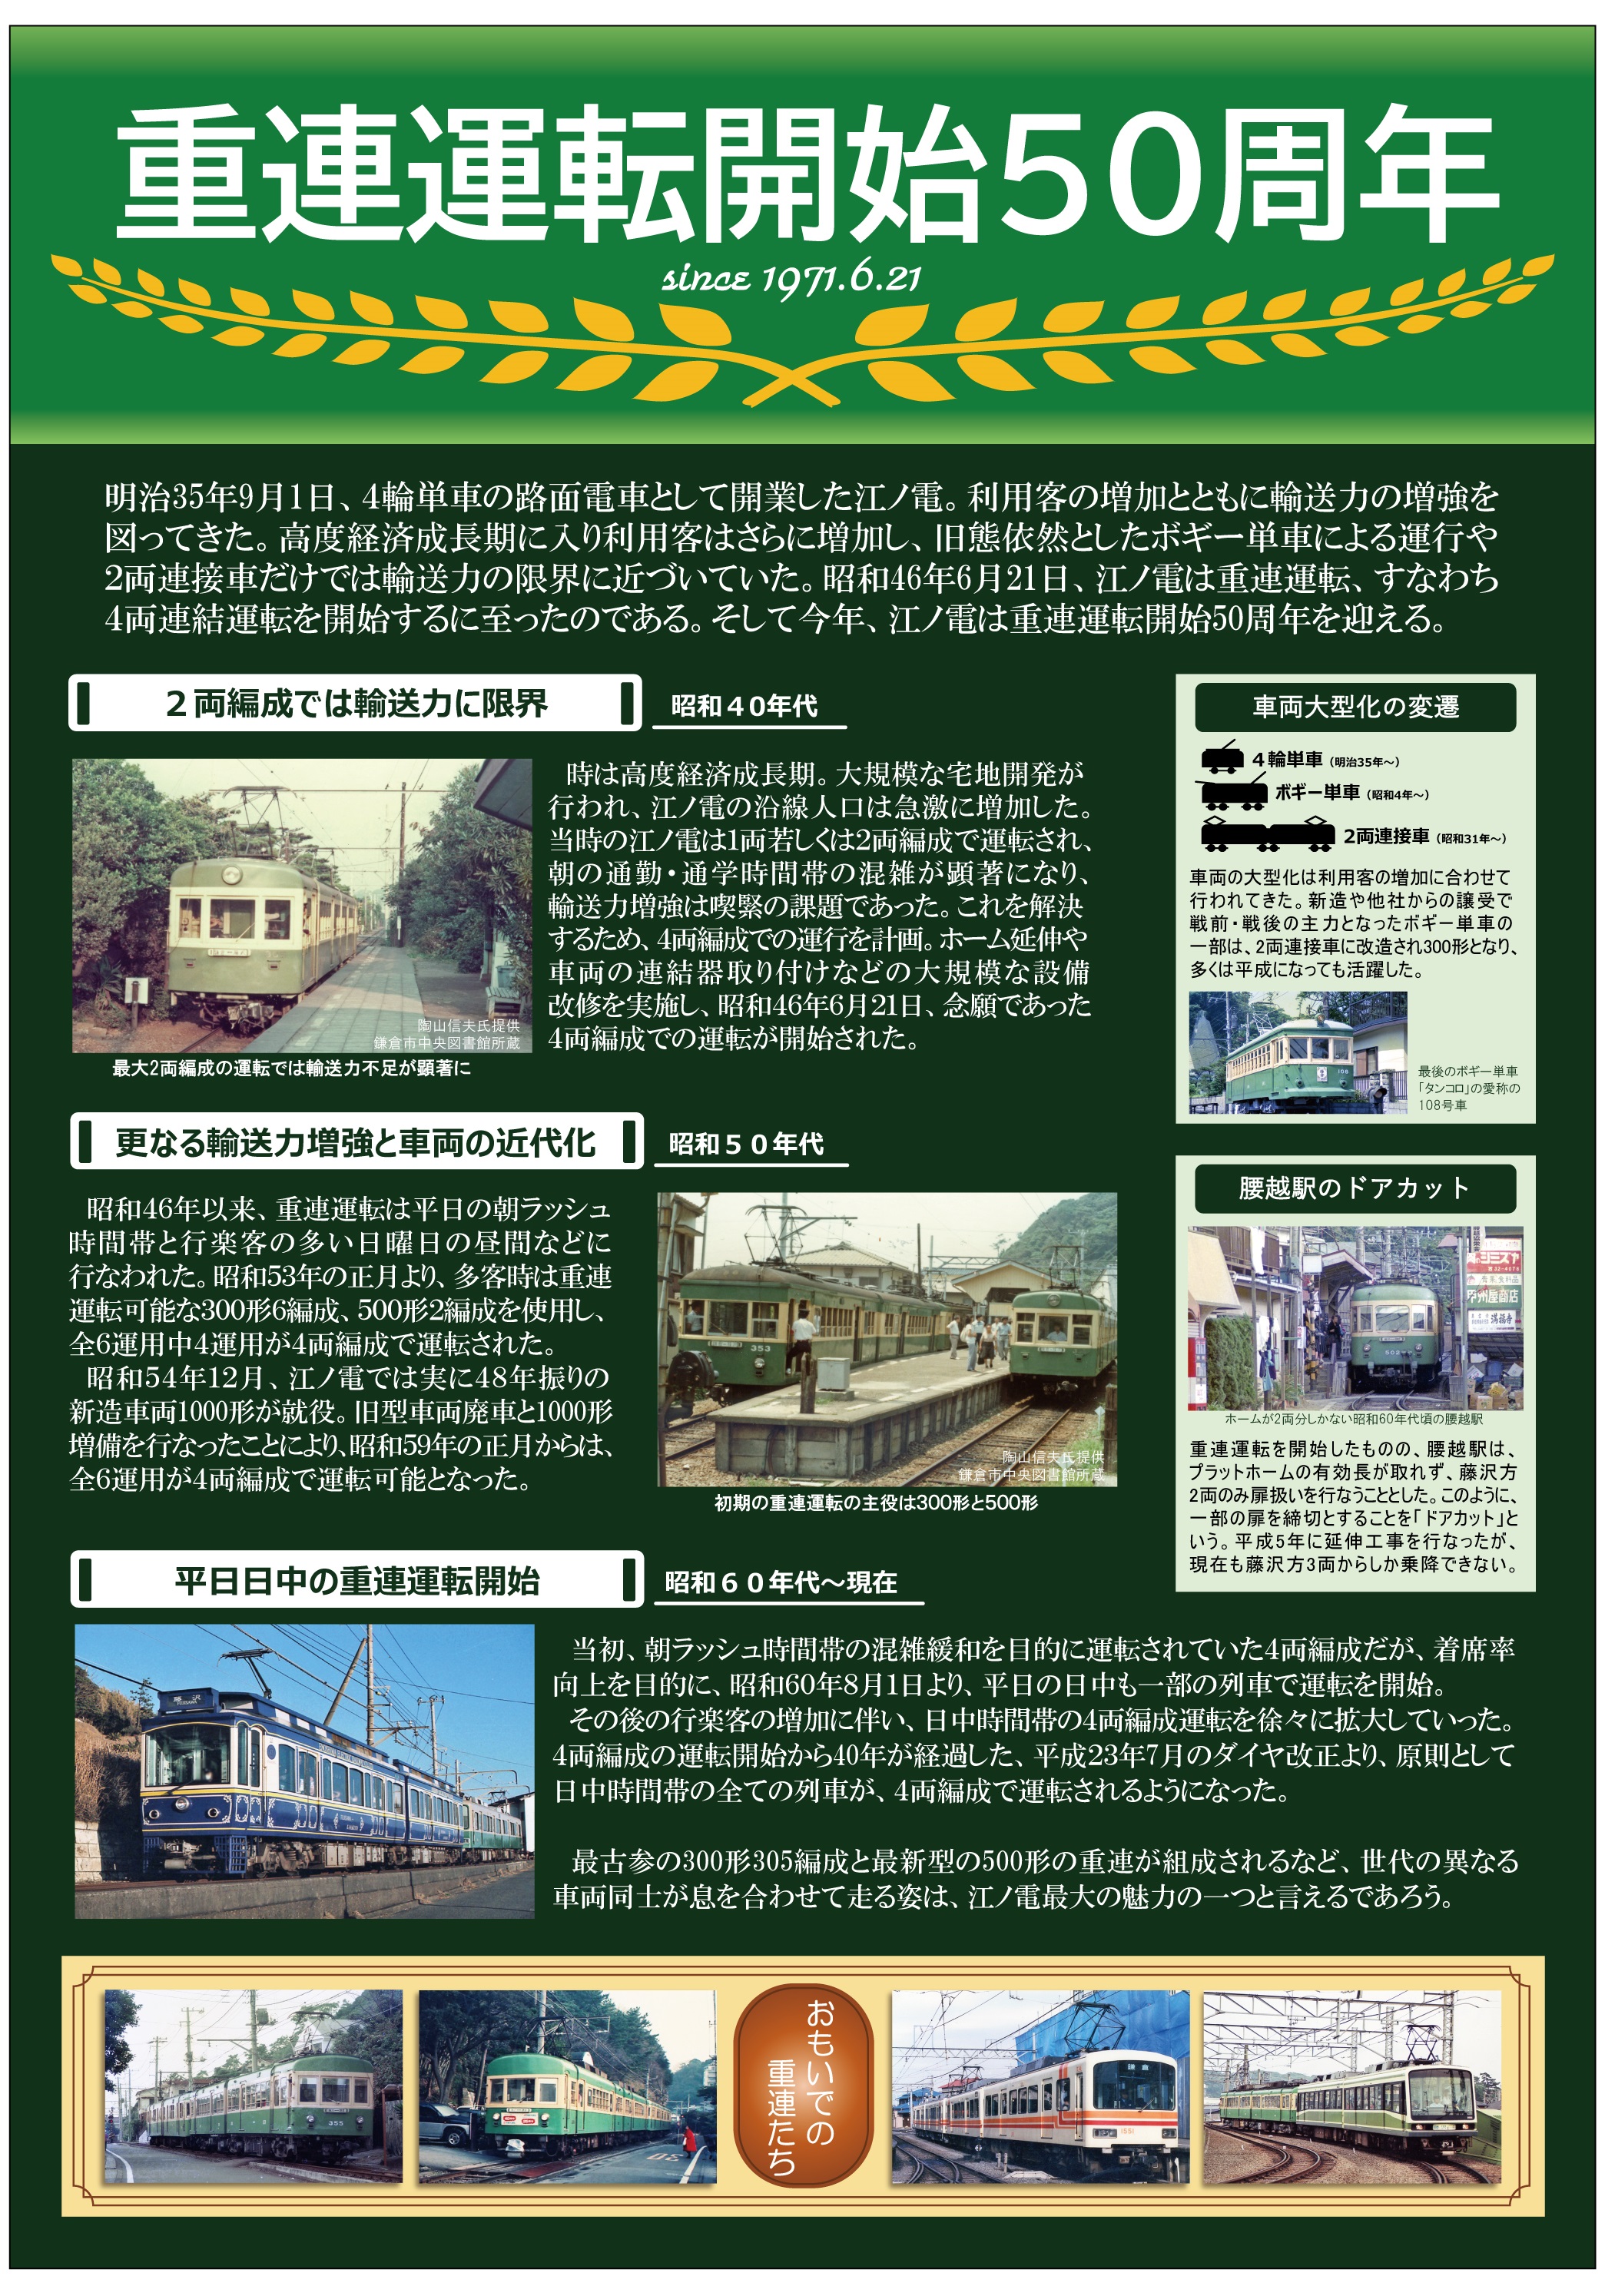 重連運転開始50周年記念企画について 江ノ島電鉄株式会社